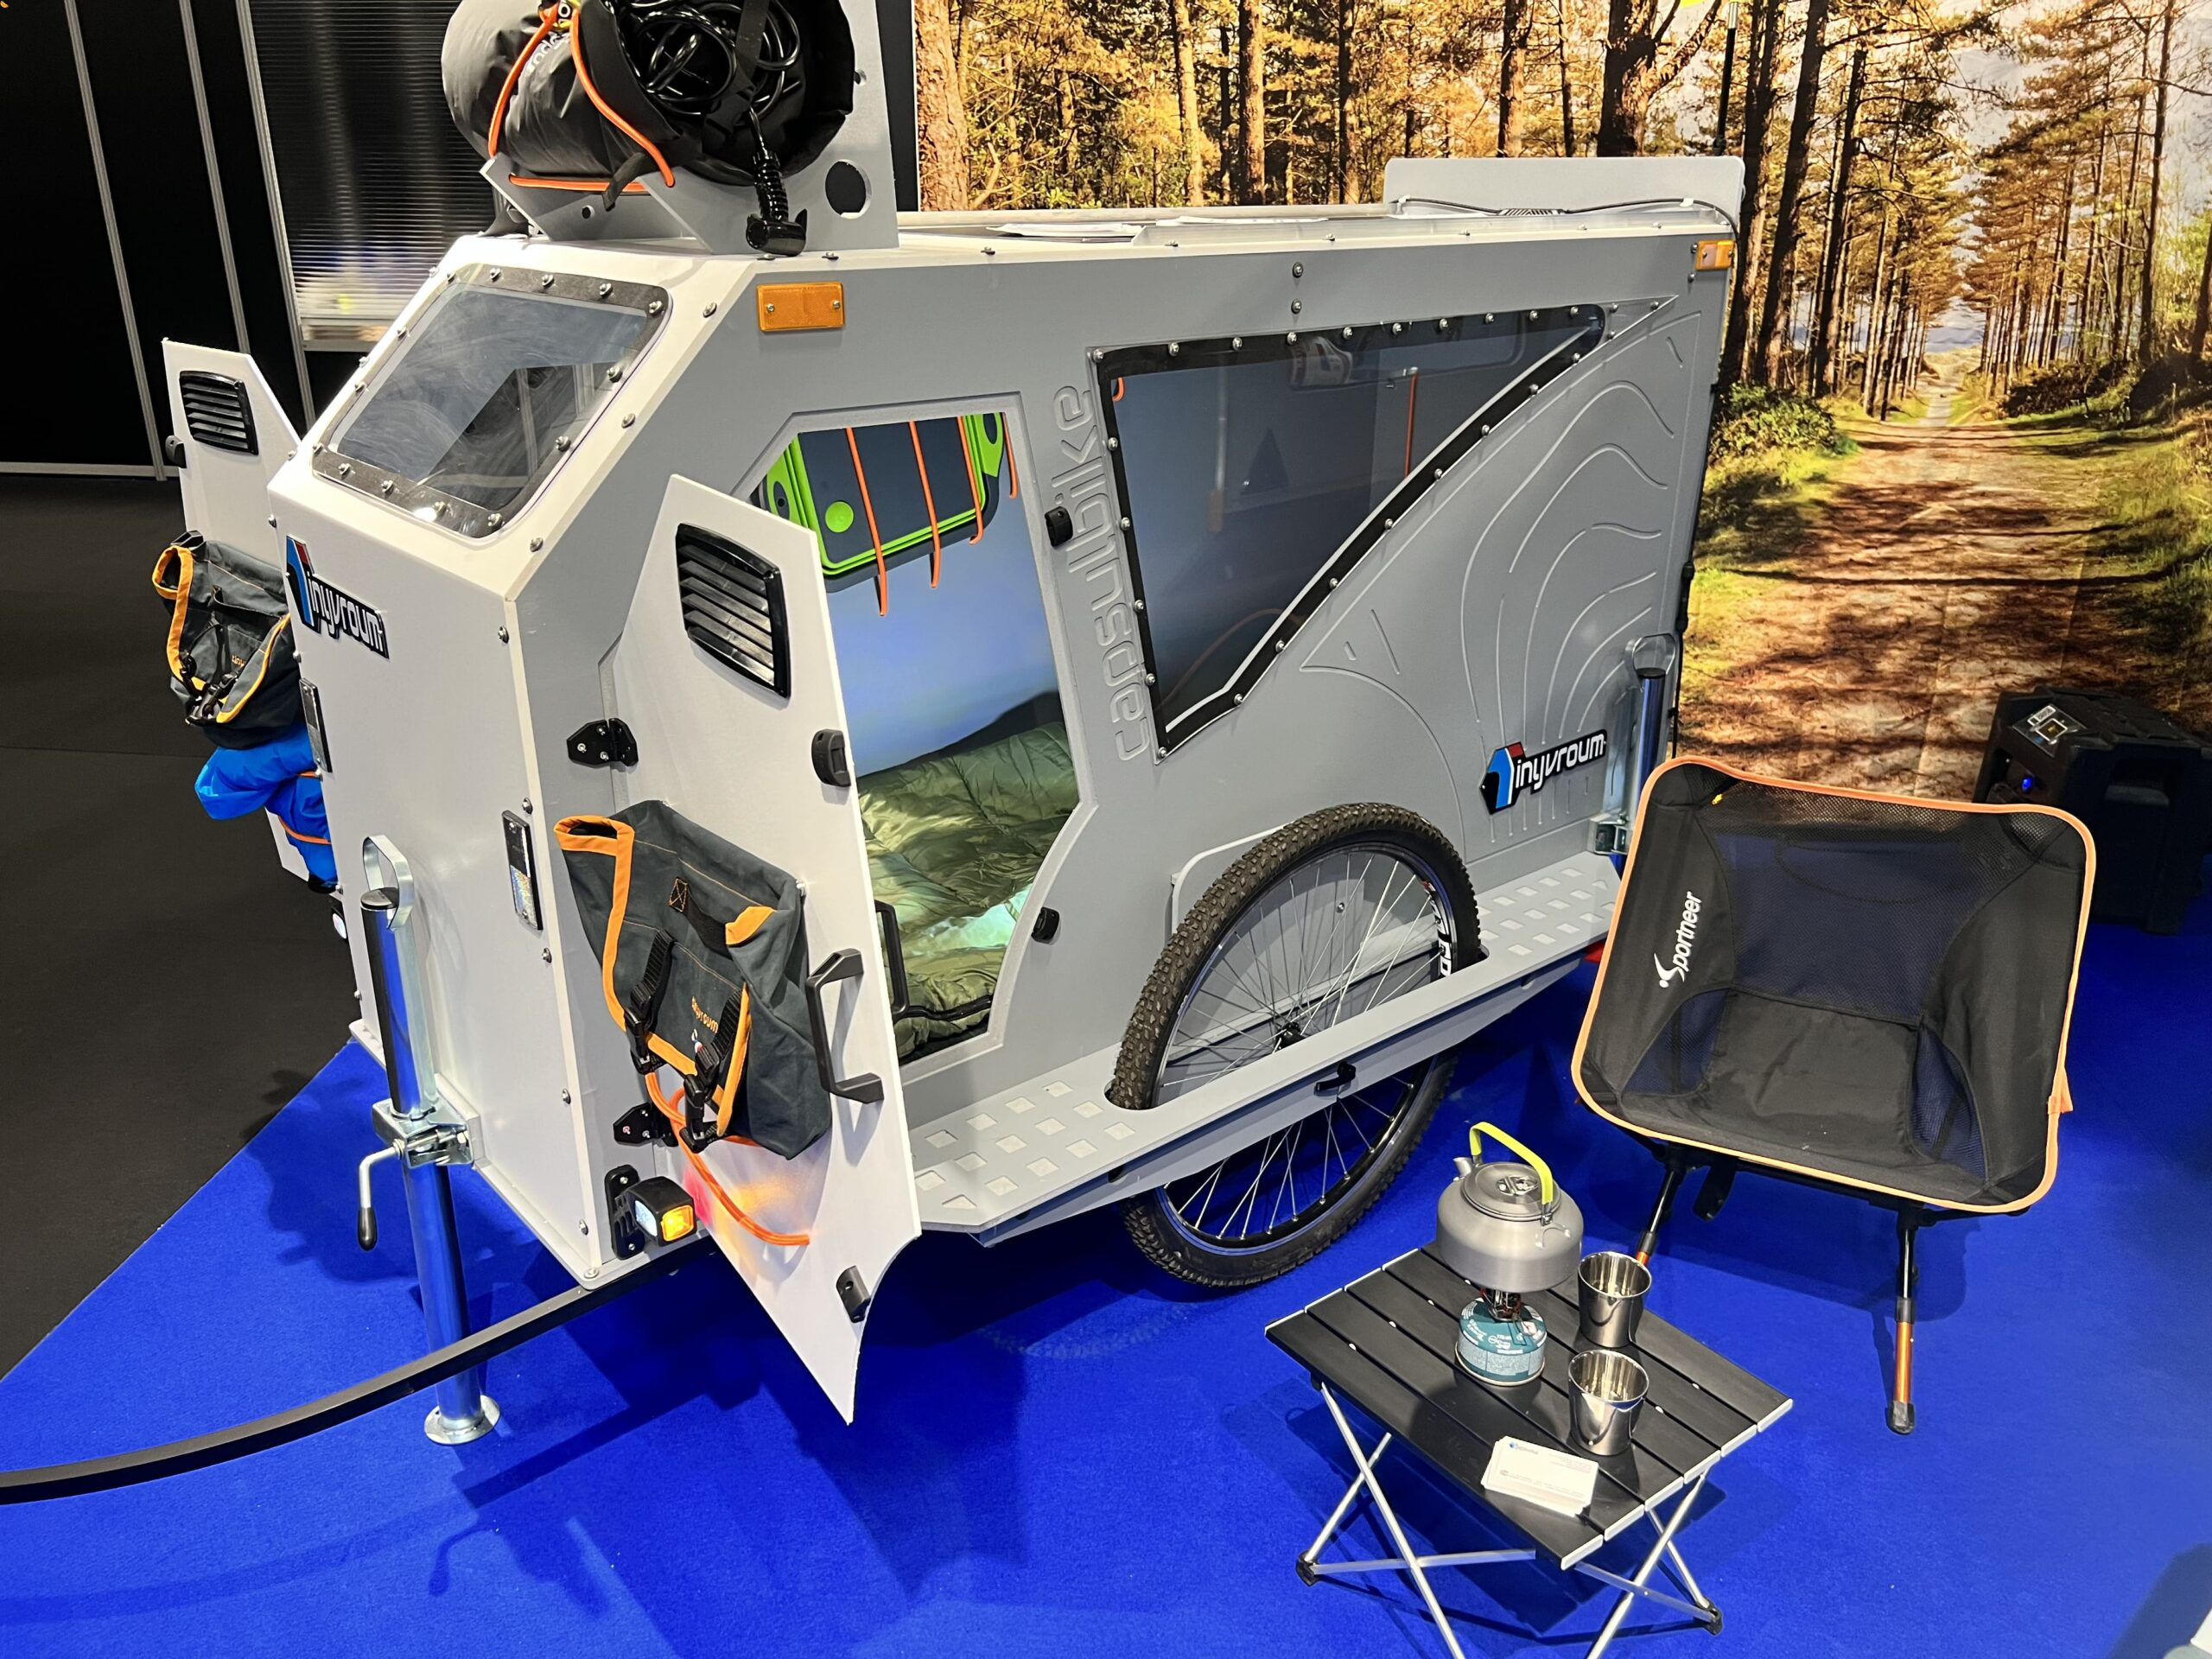 Fabriquée en France, cette caravane pour vélo intègre douche et vidéoprojecteur